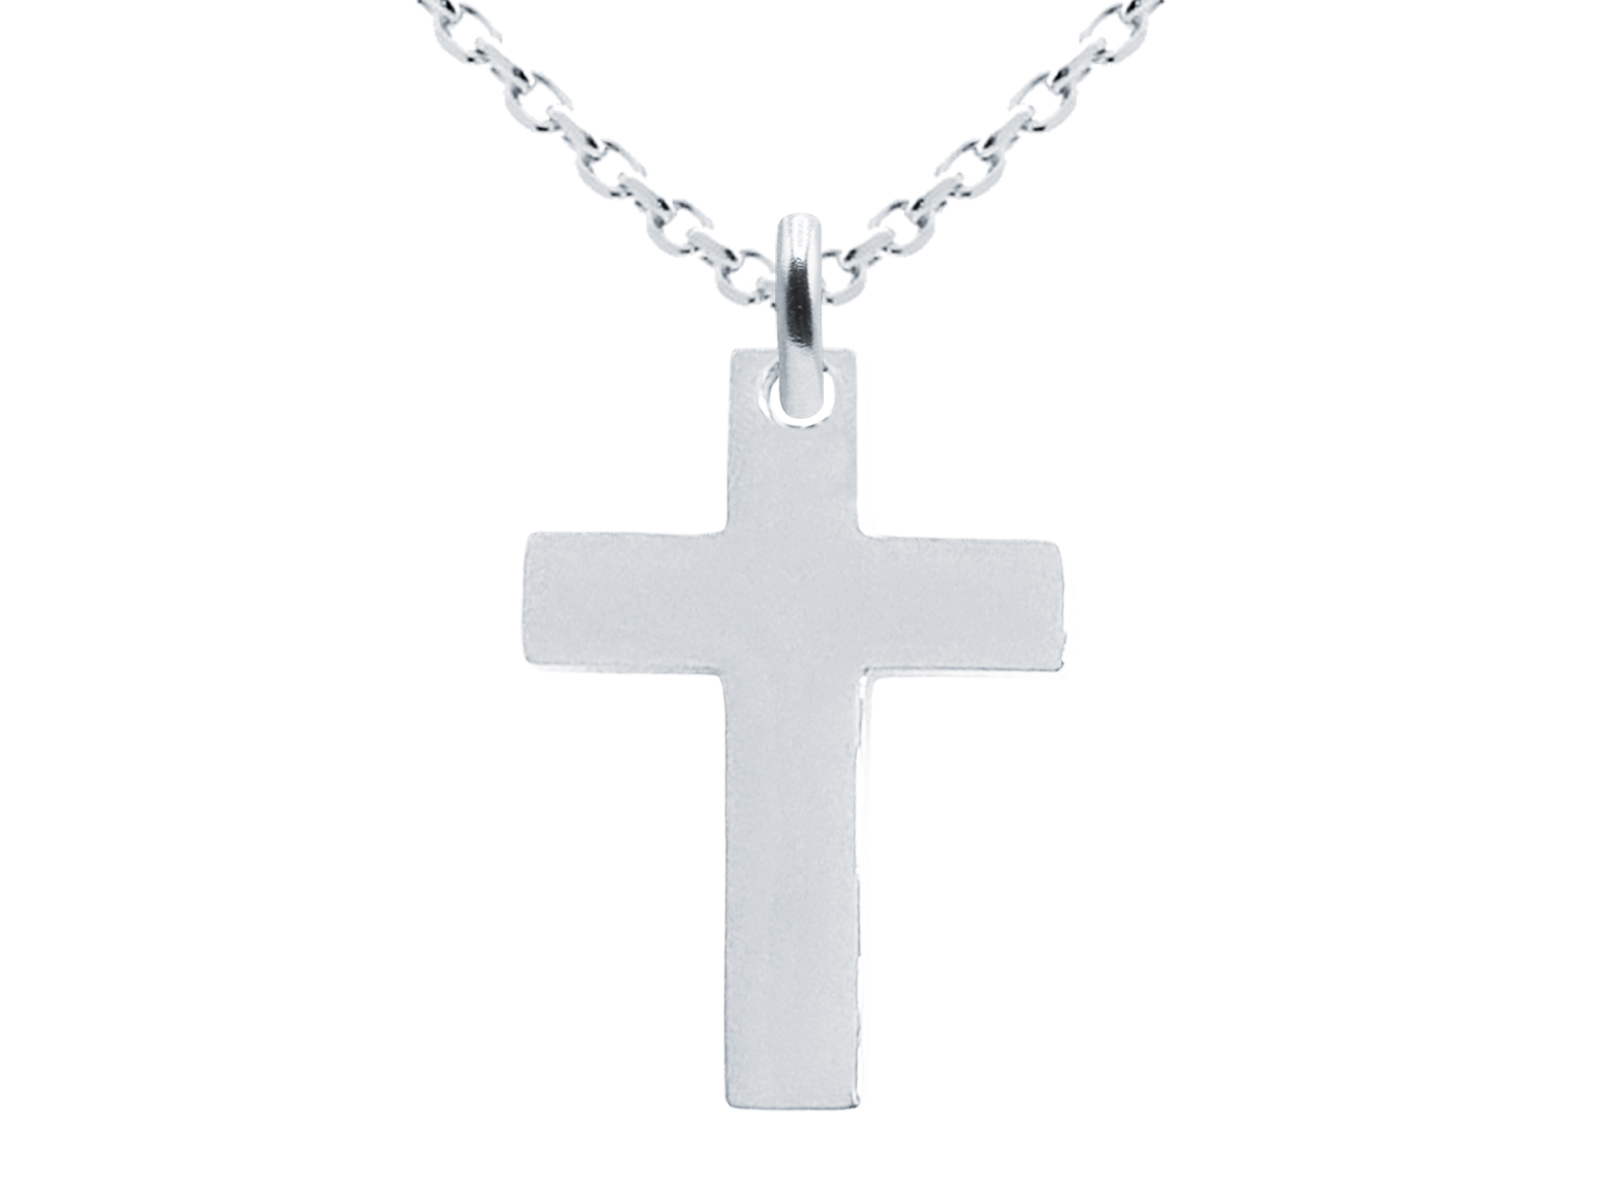 Collier orné d'un pendentif croix (25mm) en acier inoxydable argenté